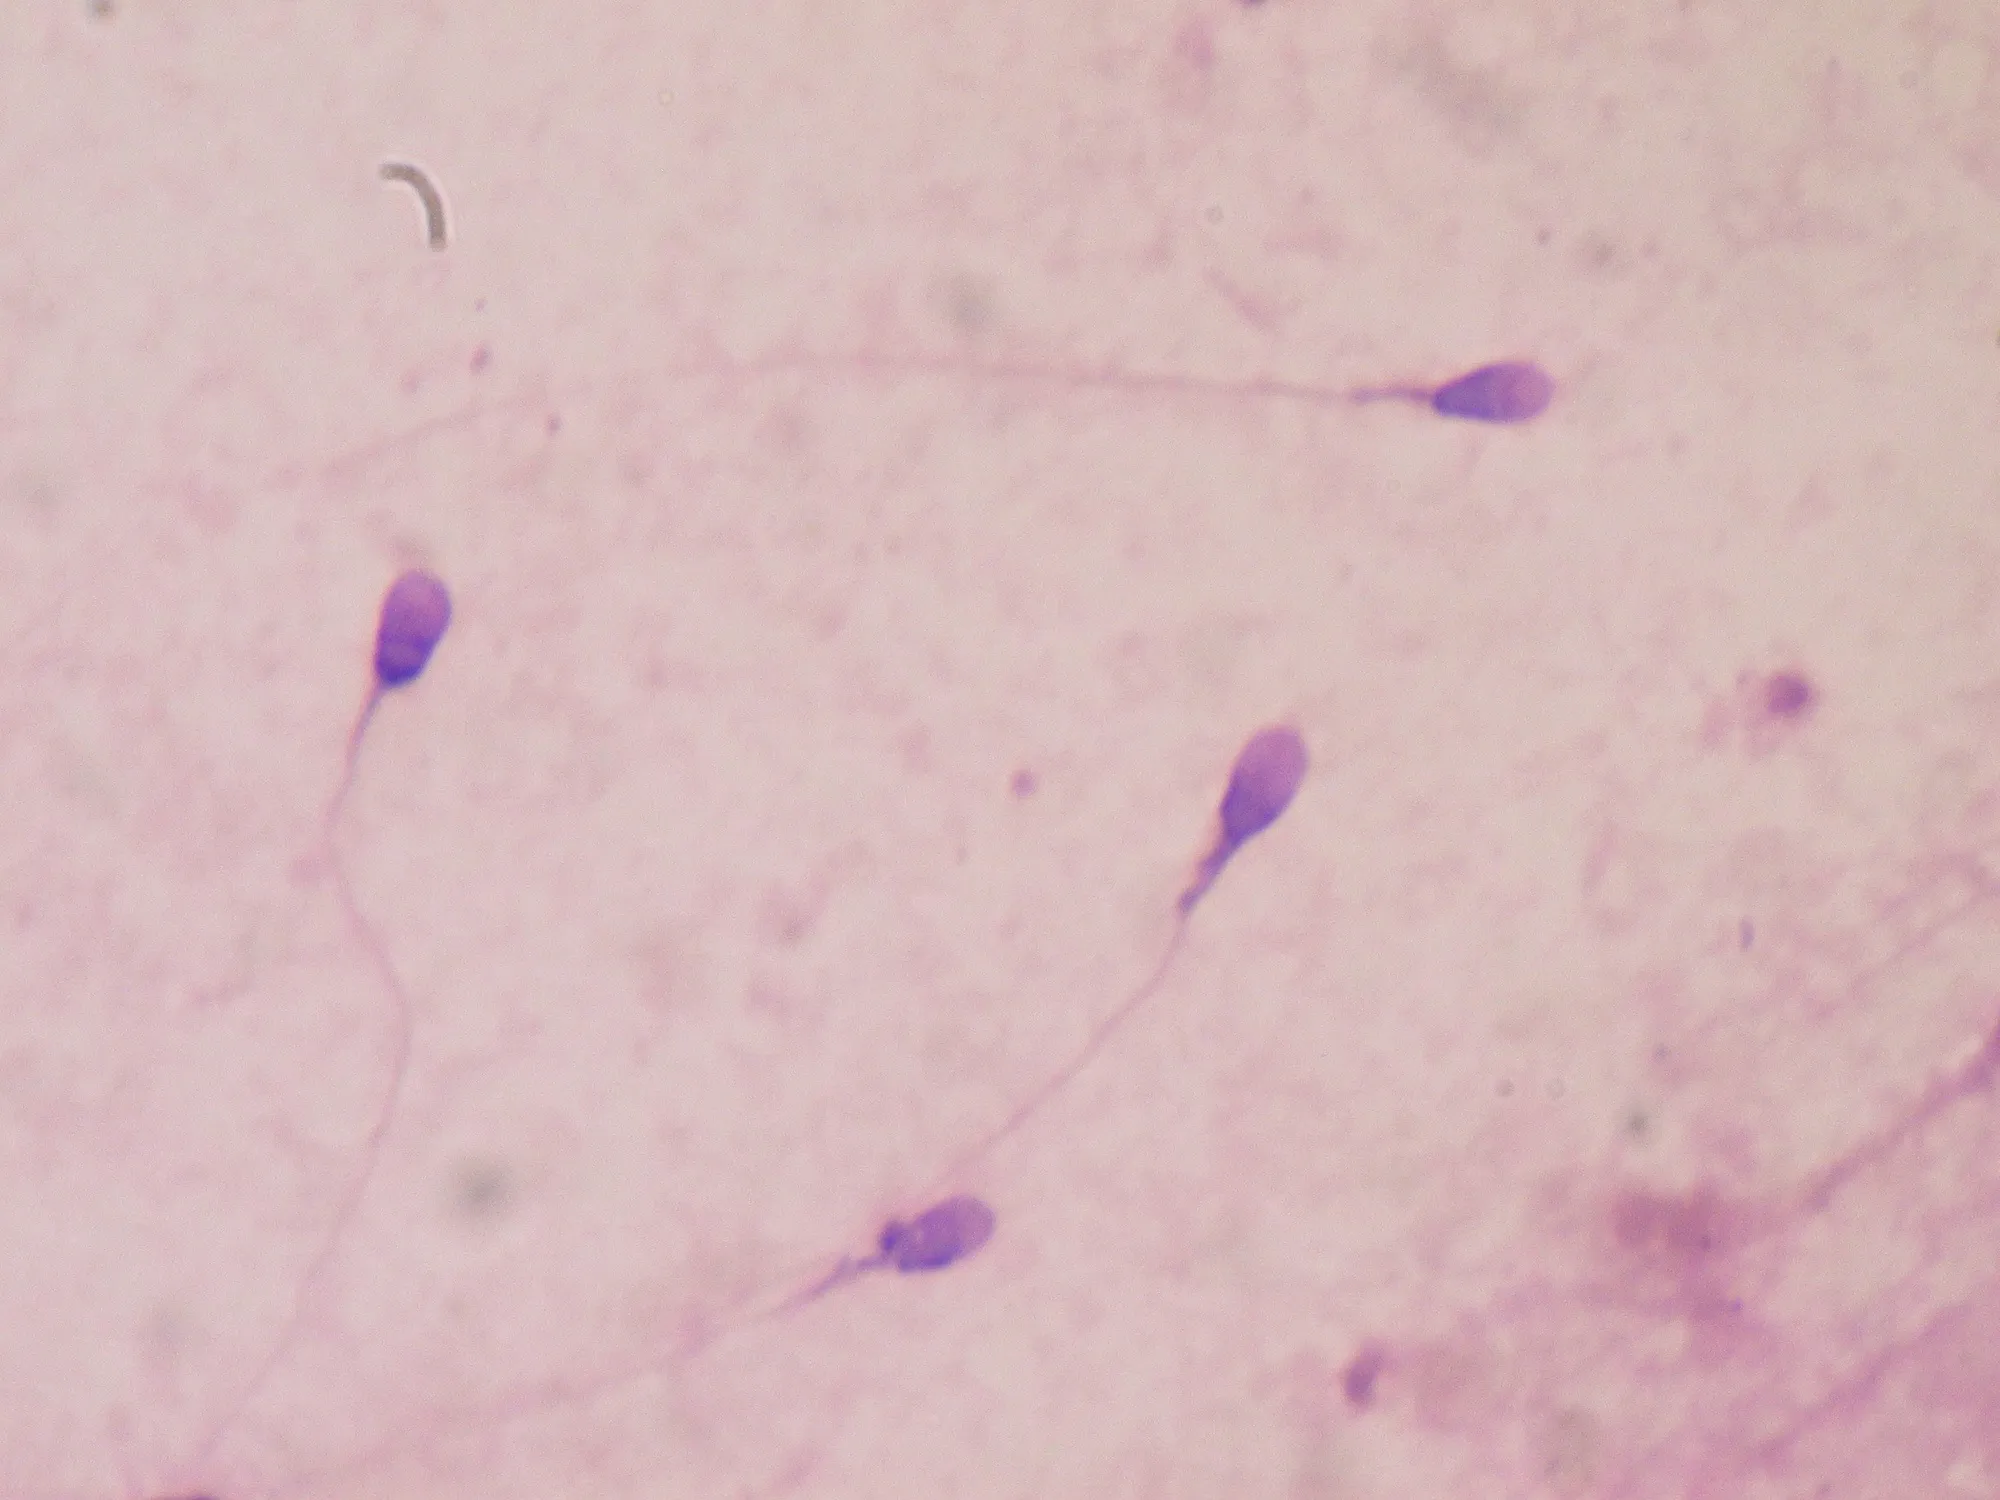 Photographie de cellules reproductrices observées au microscope optique